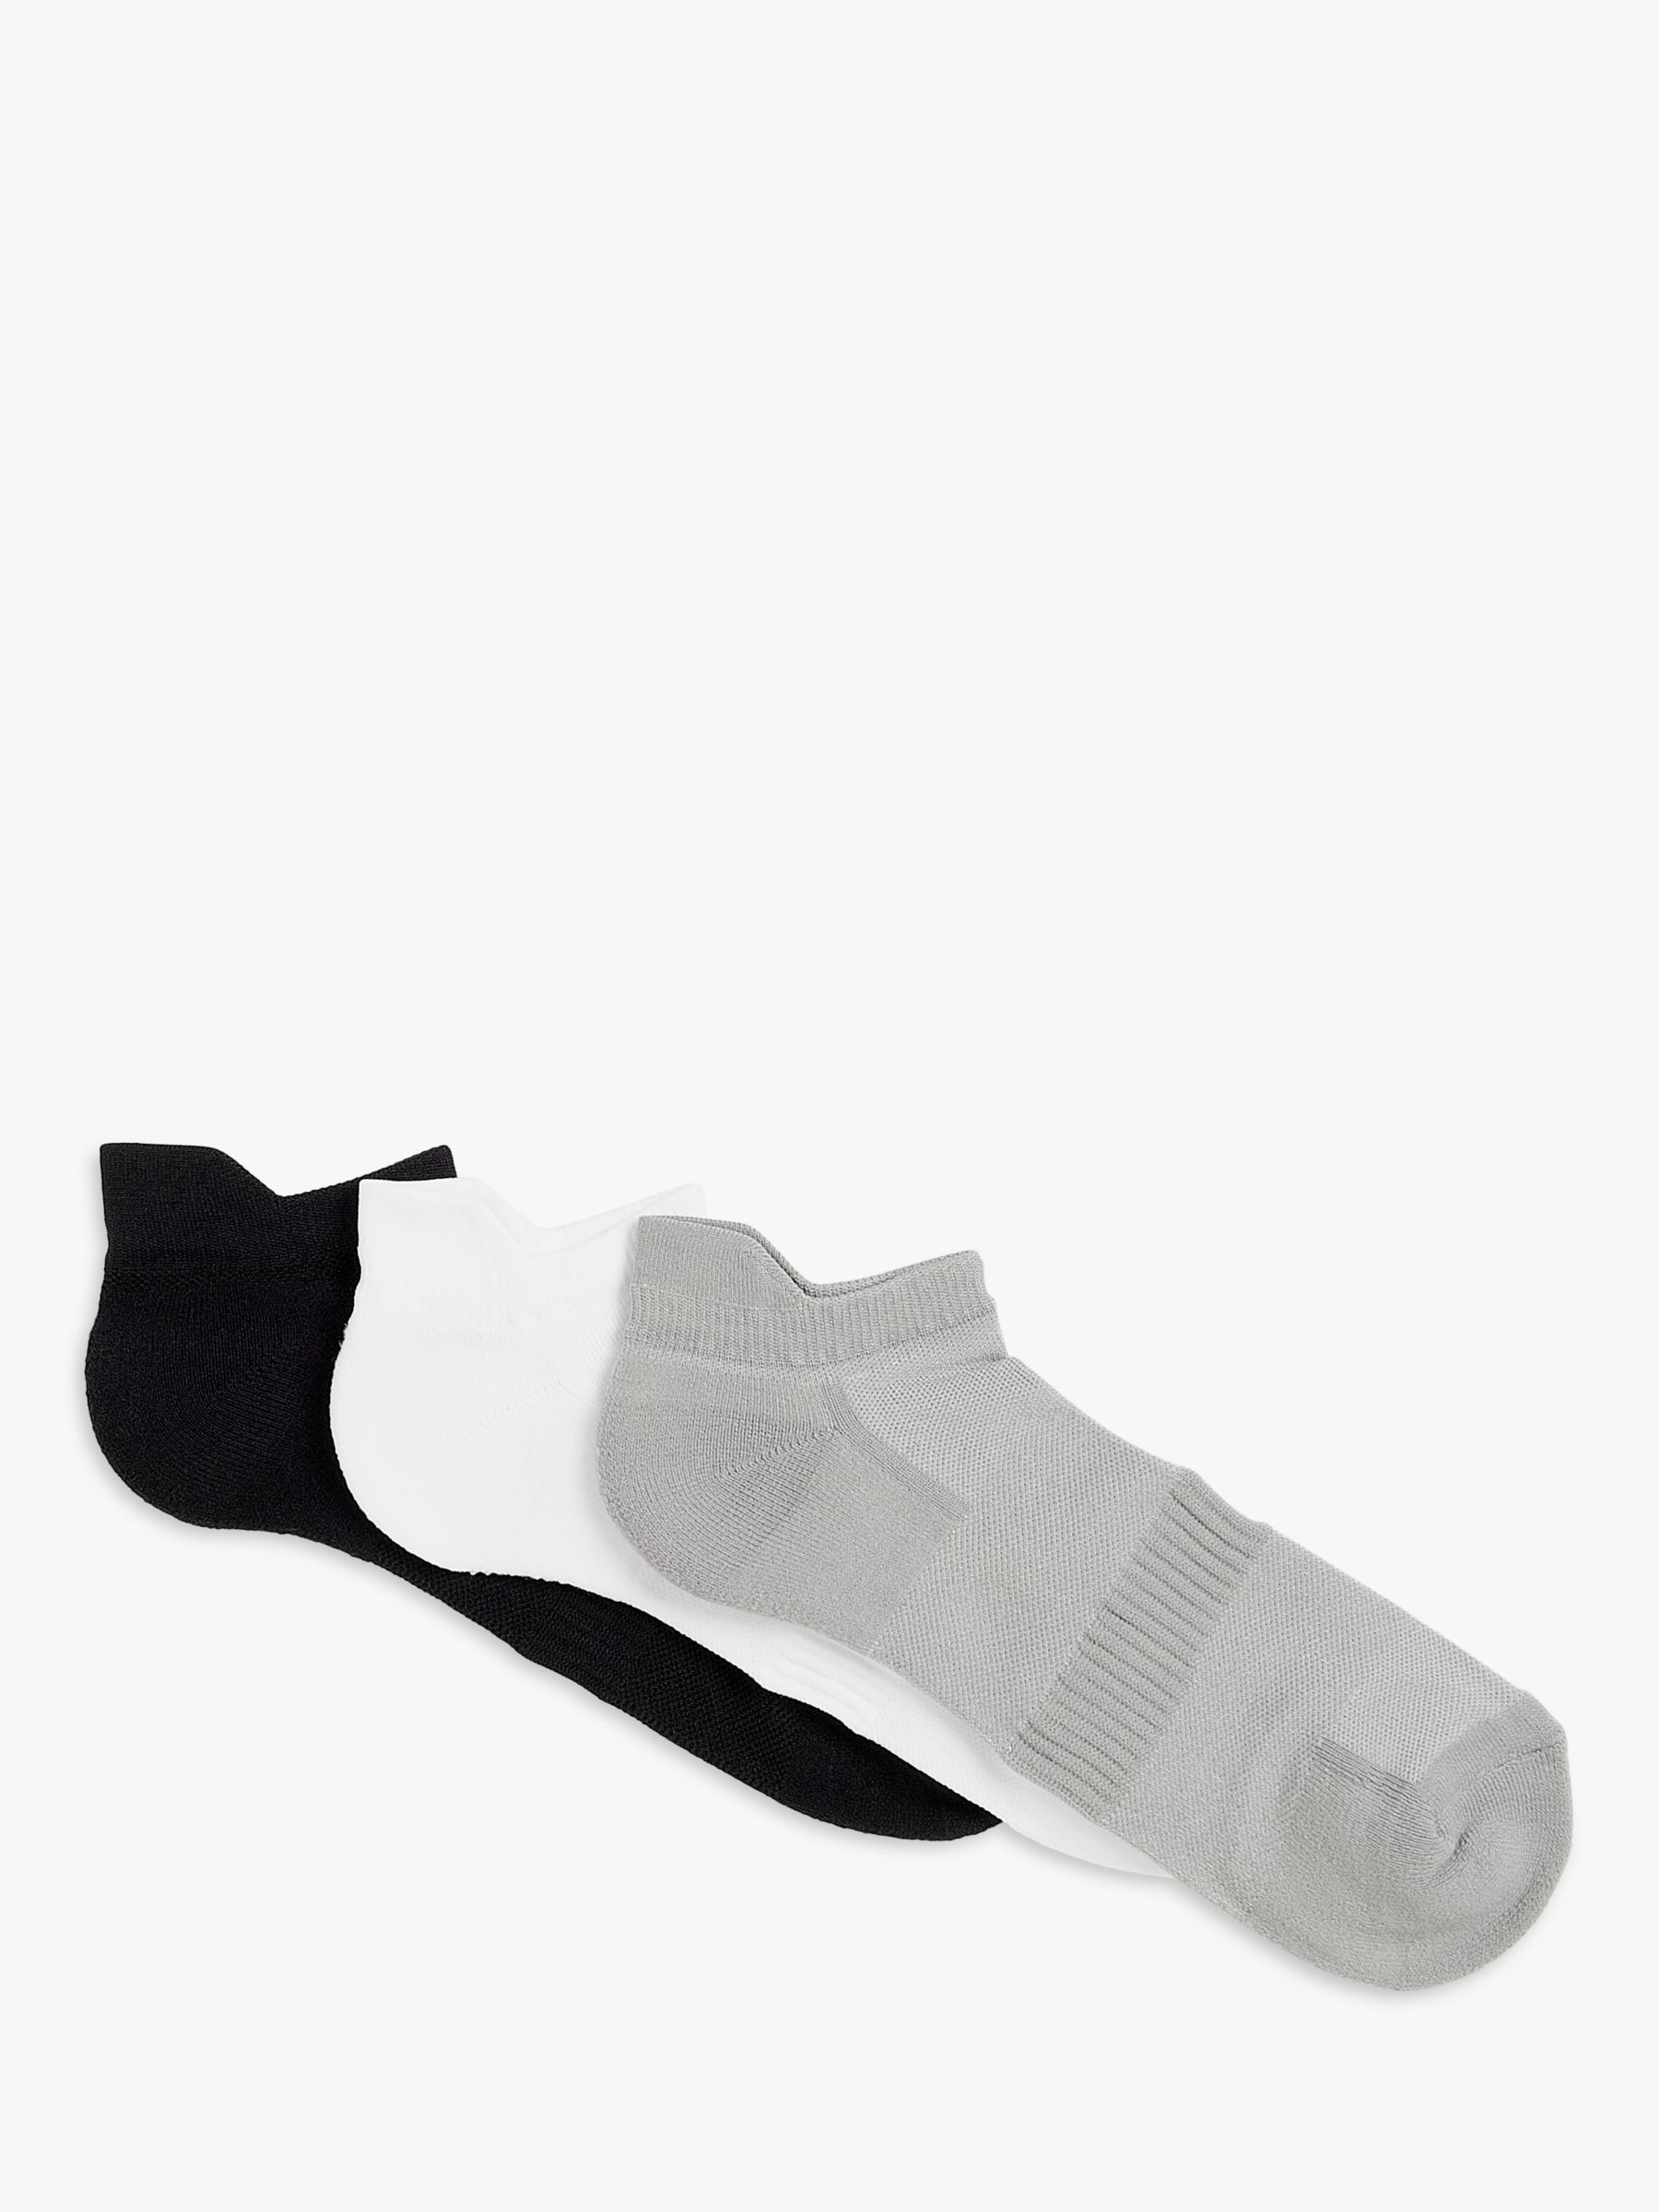 Buy John Lewis Men's Training Socks, Pack of 3, Black/Grey/White Online at johnlewis.com